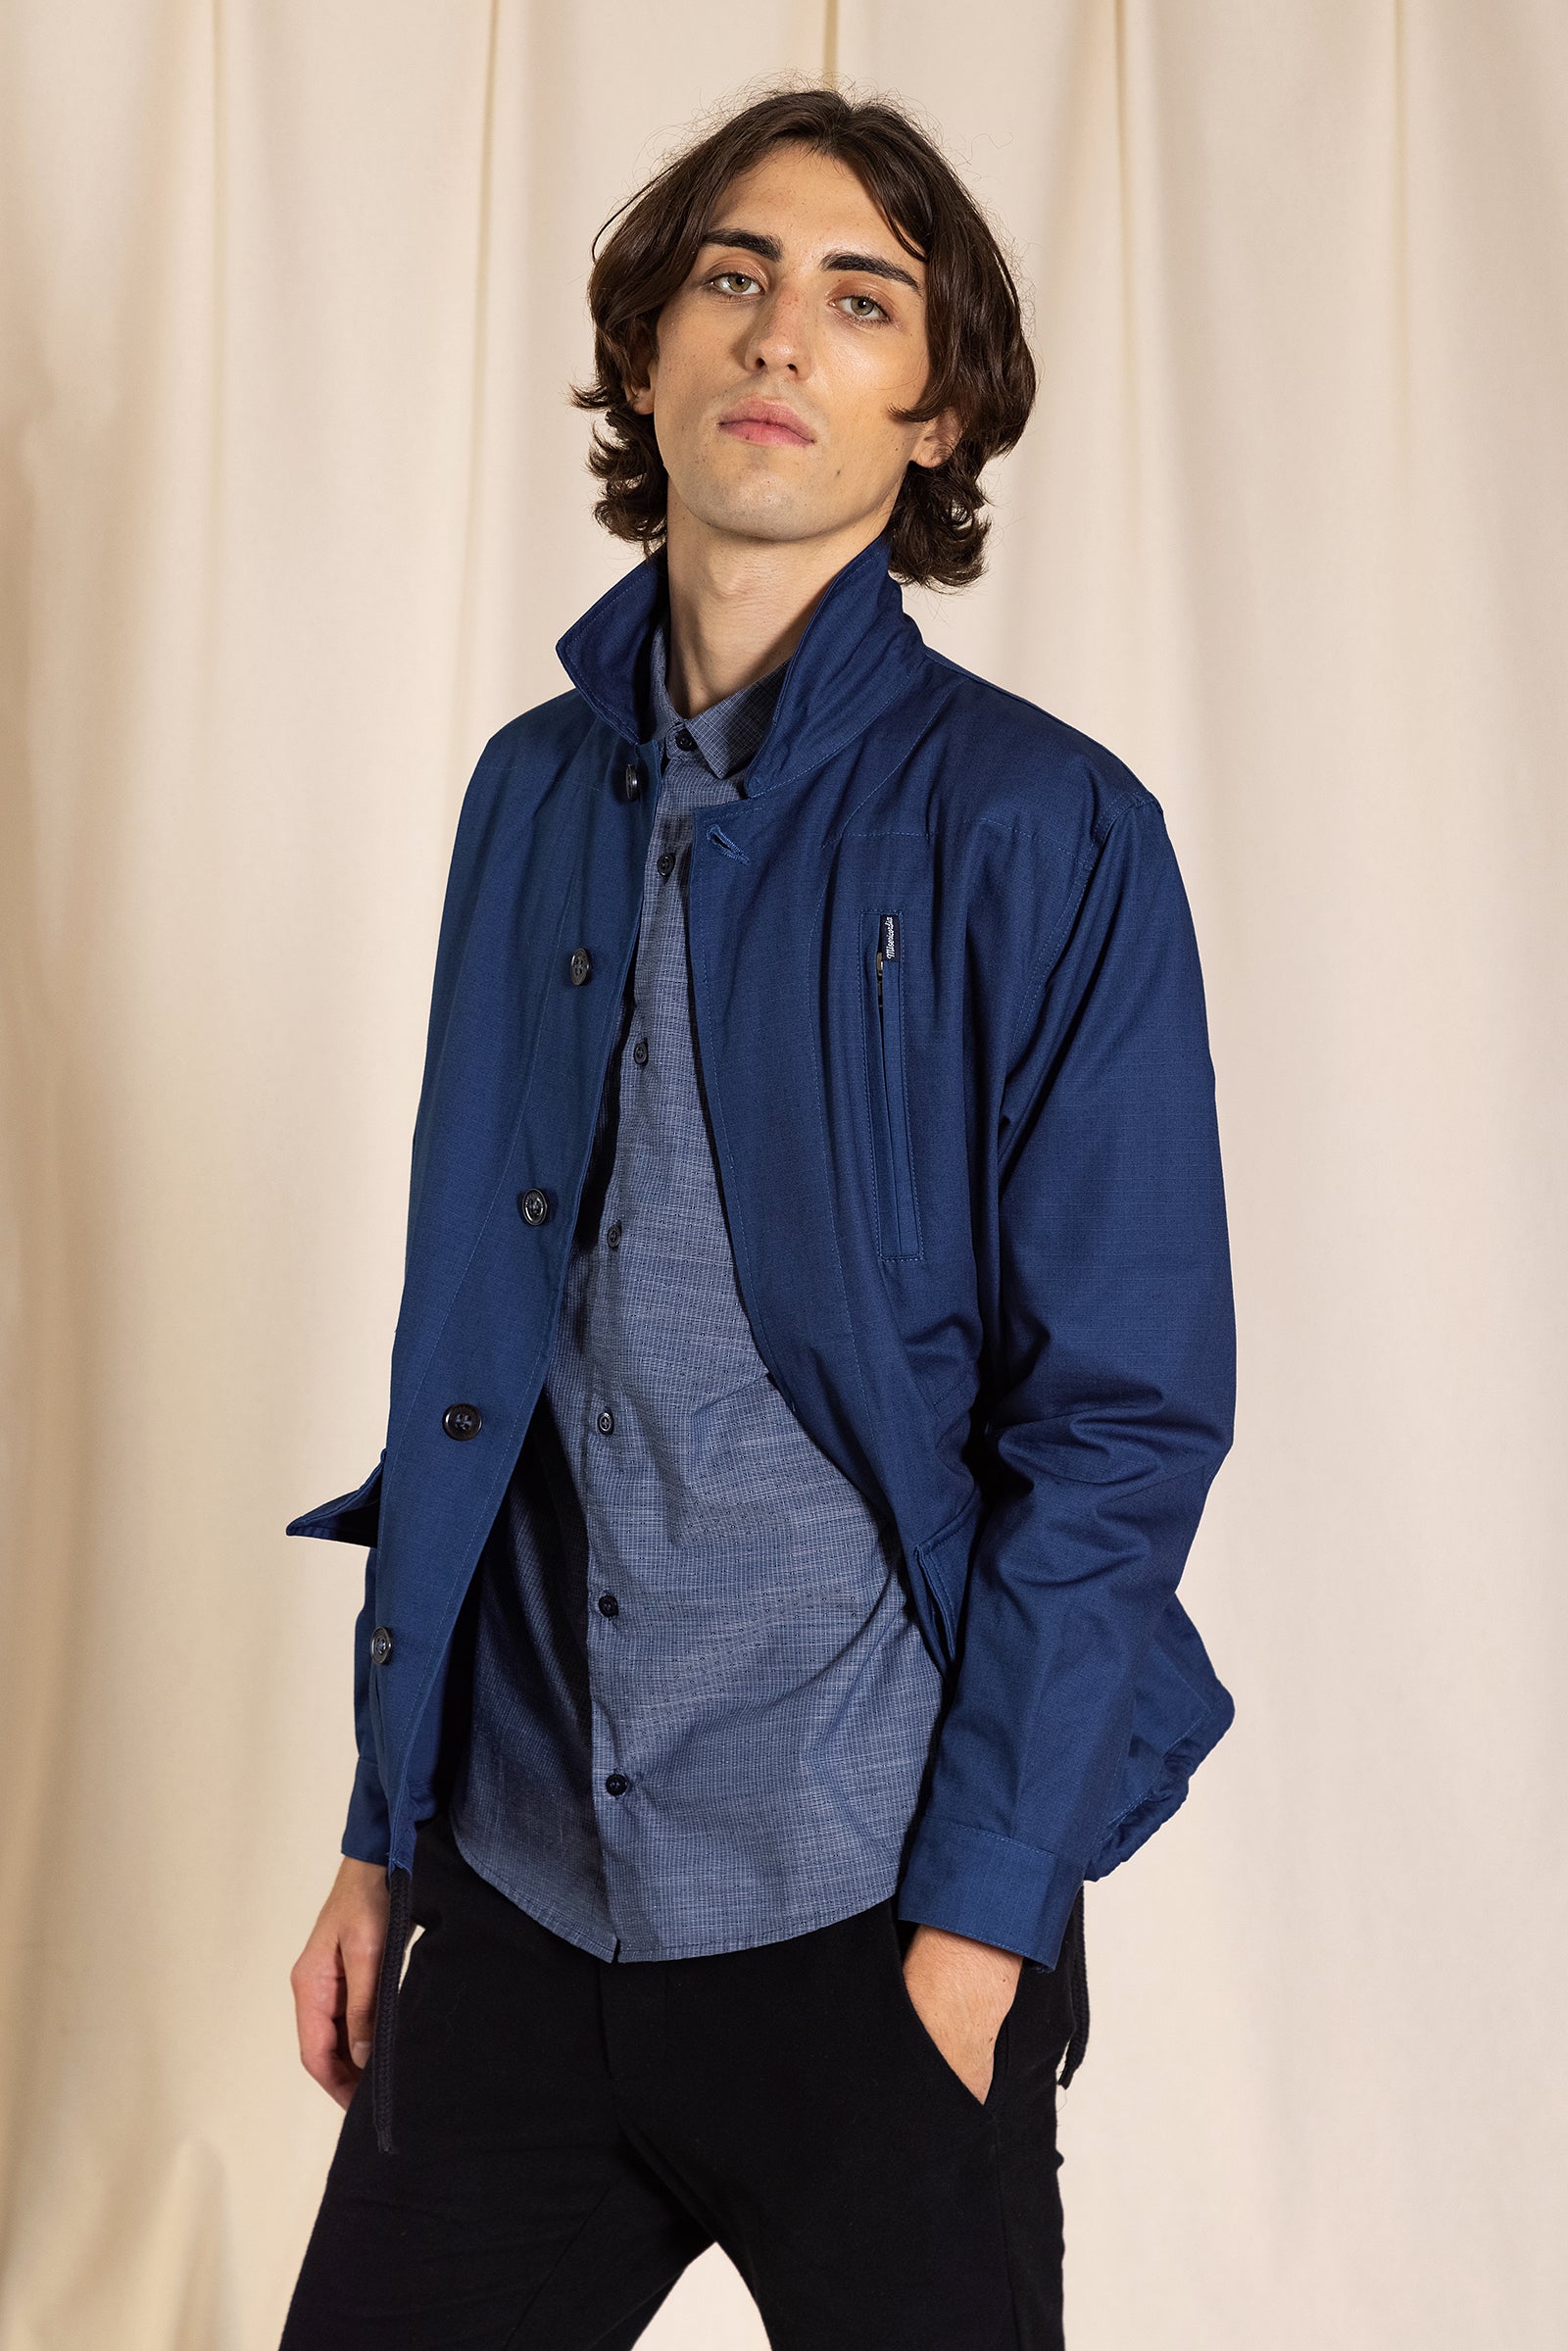 Blouson Homme bleu encre ajustable cintré poches chemise à motif 